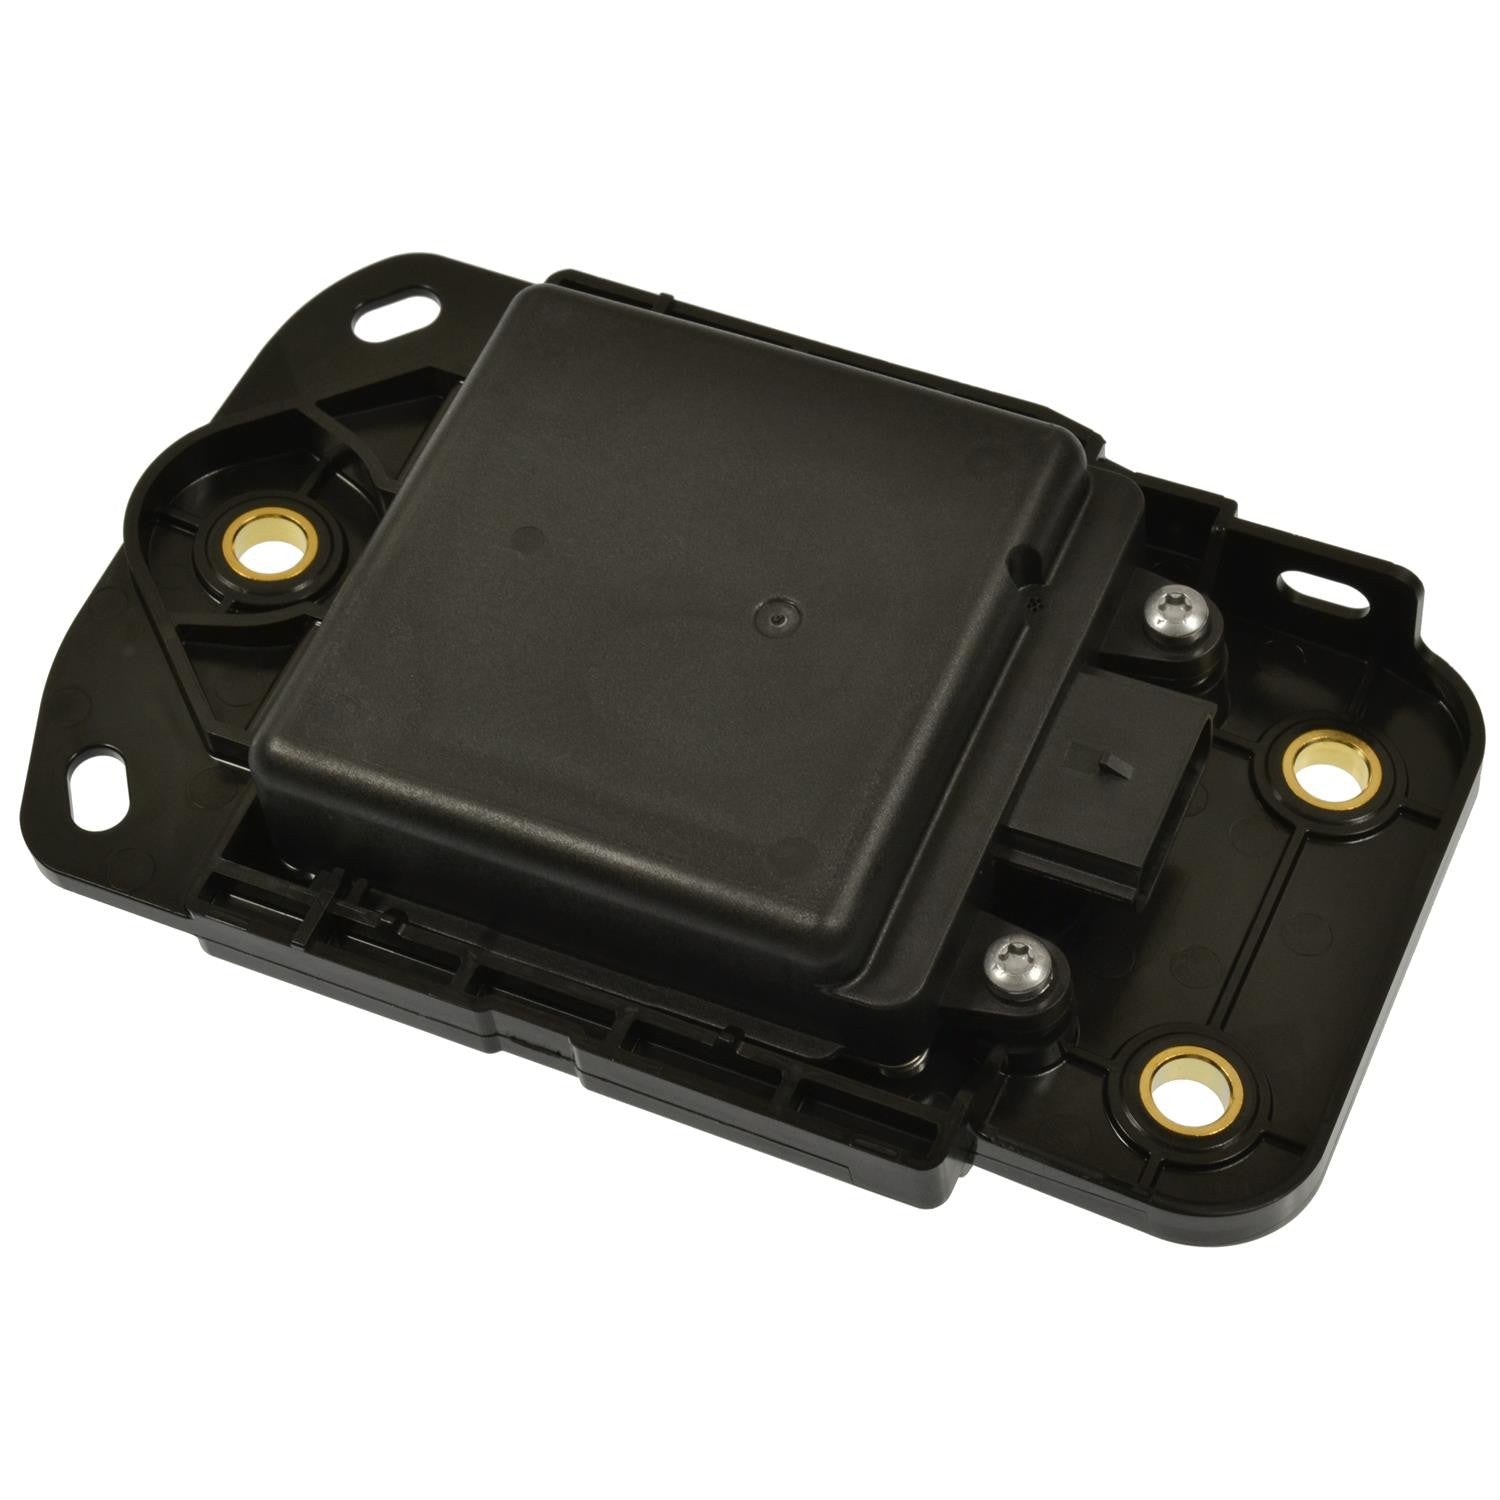 Standard BSD16 Left Blind Spot Detection System Warning Sensor for Nissan Altima Maxima FWD